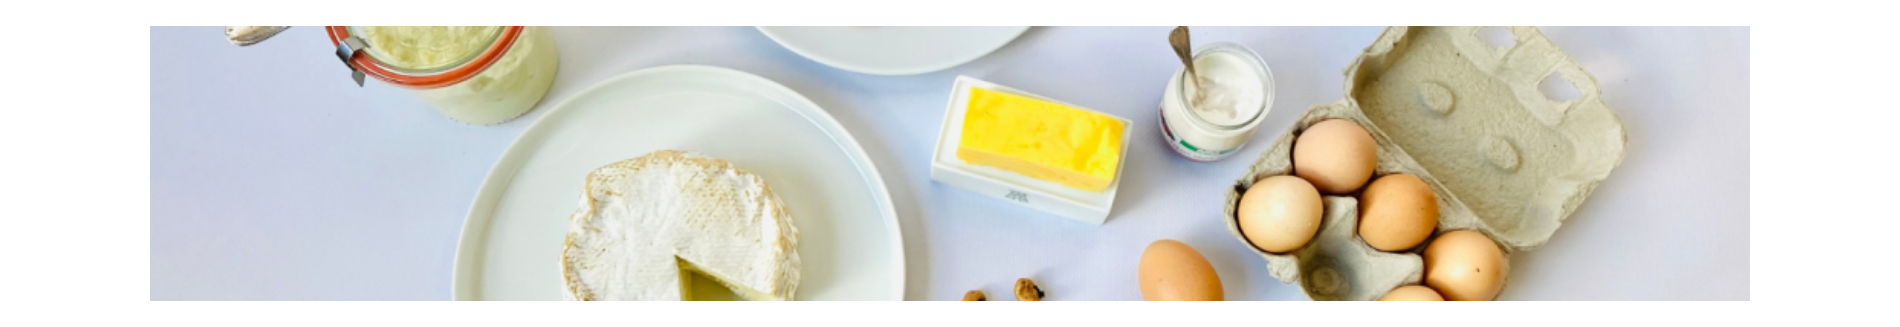 Creamery - The best of fine food products - La Tour d'Argent Paris